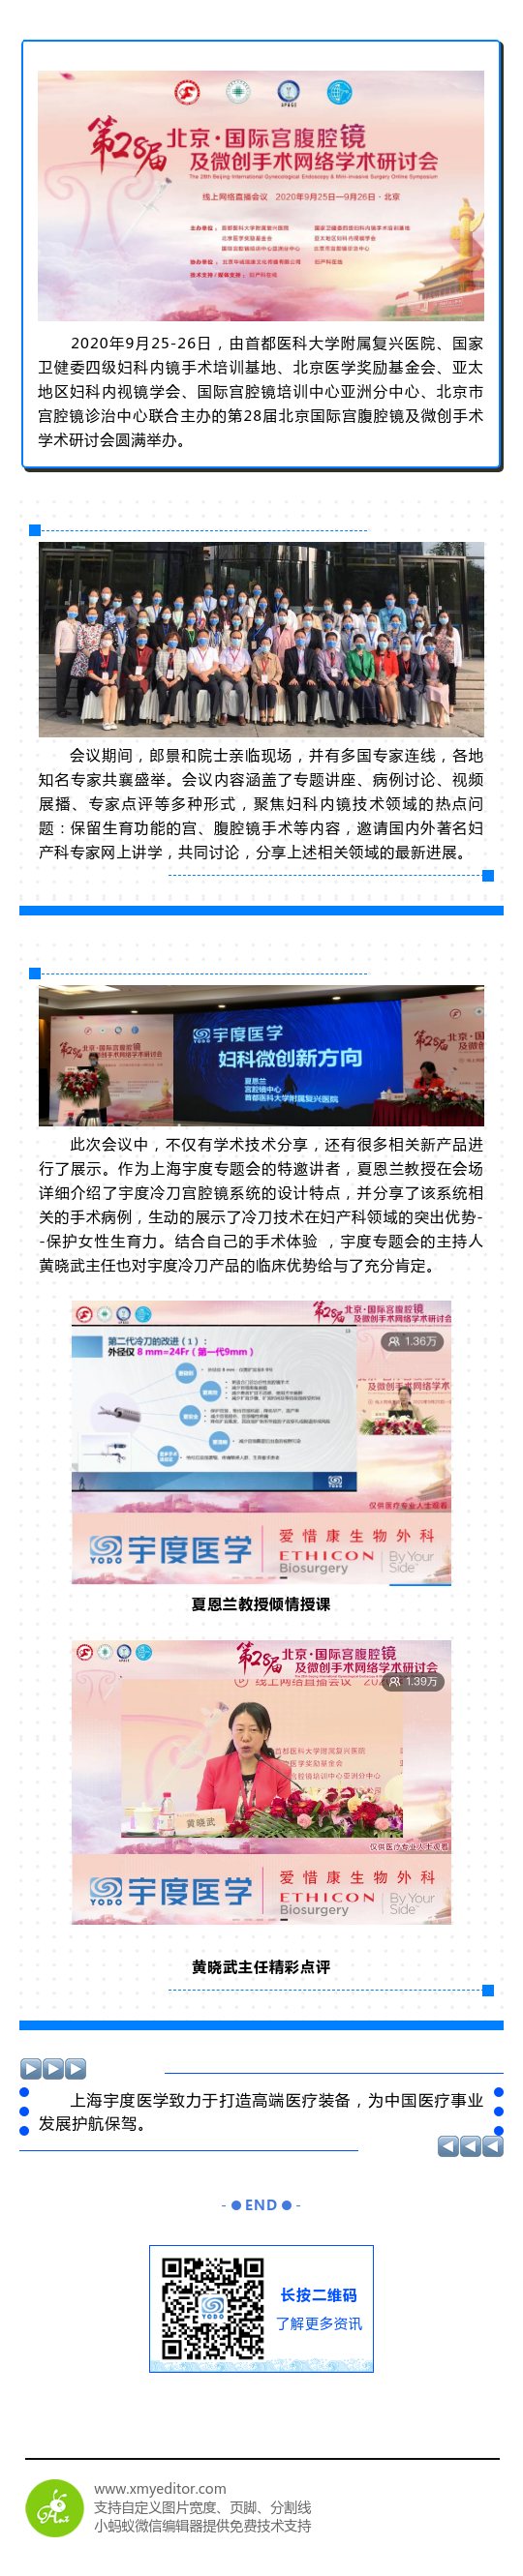 上海宇度祝贺第28届北京国际宫腹腔镜及微创手术学术研讨会圆满成功